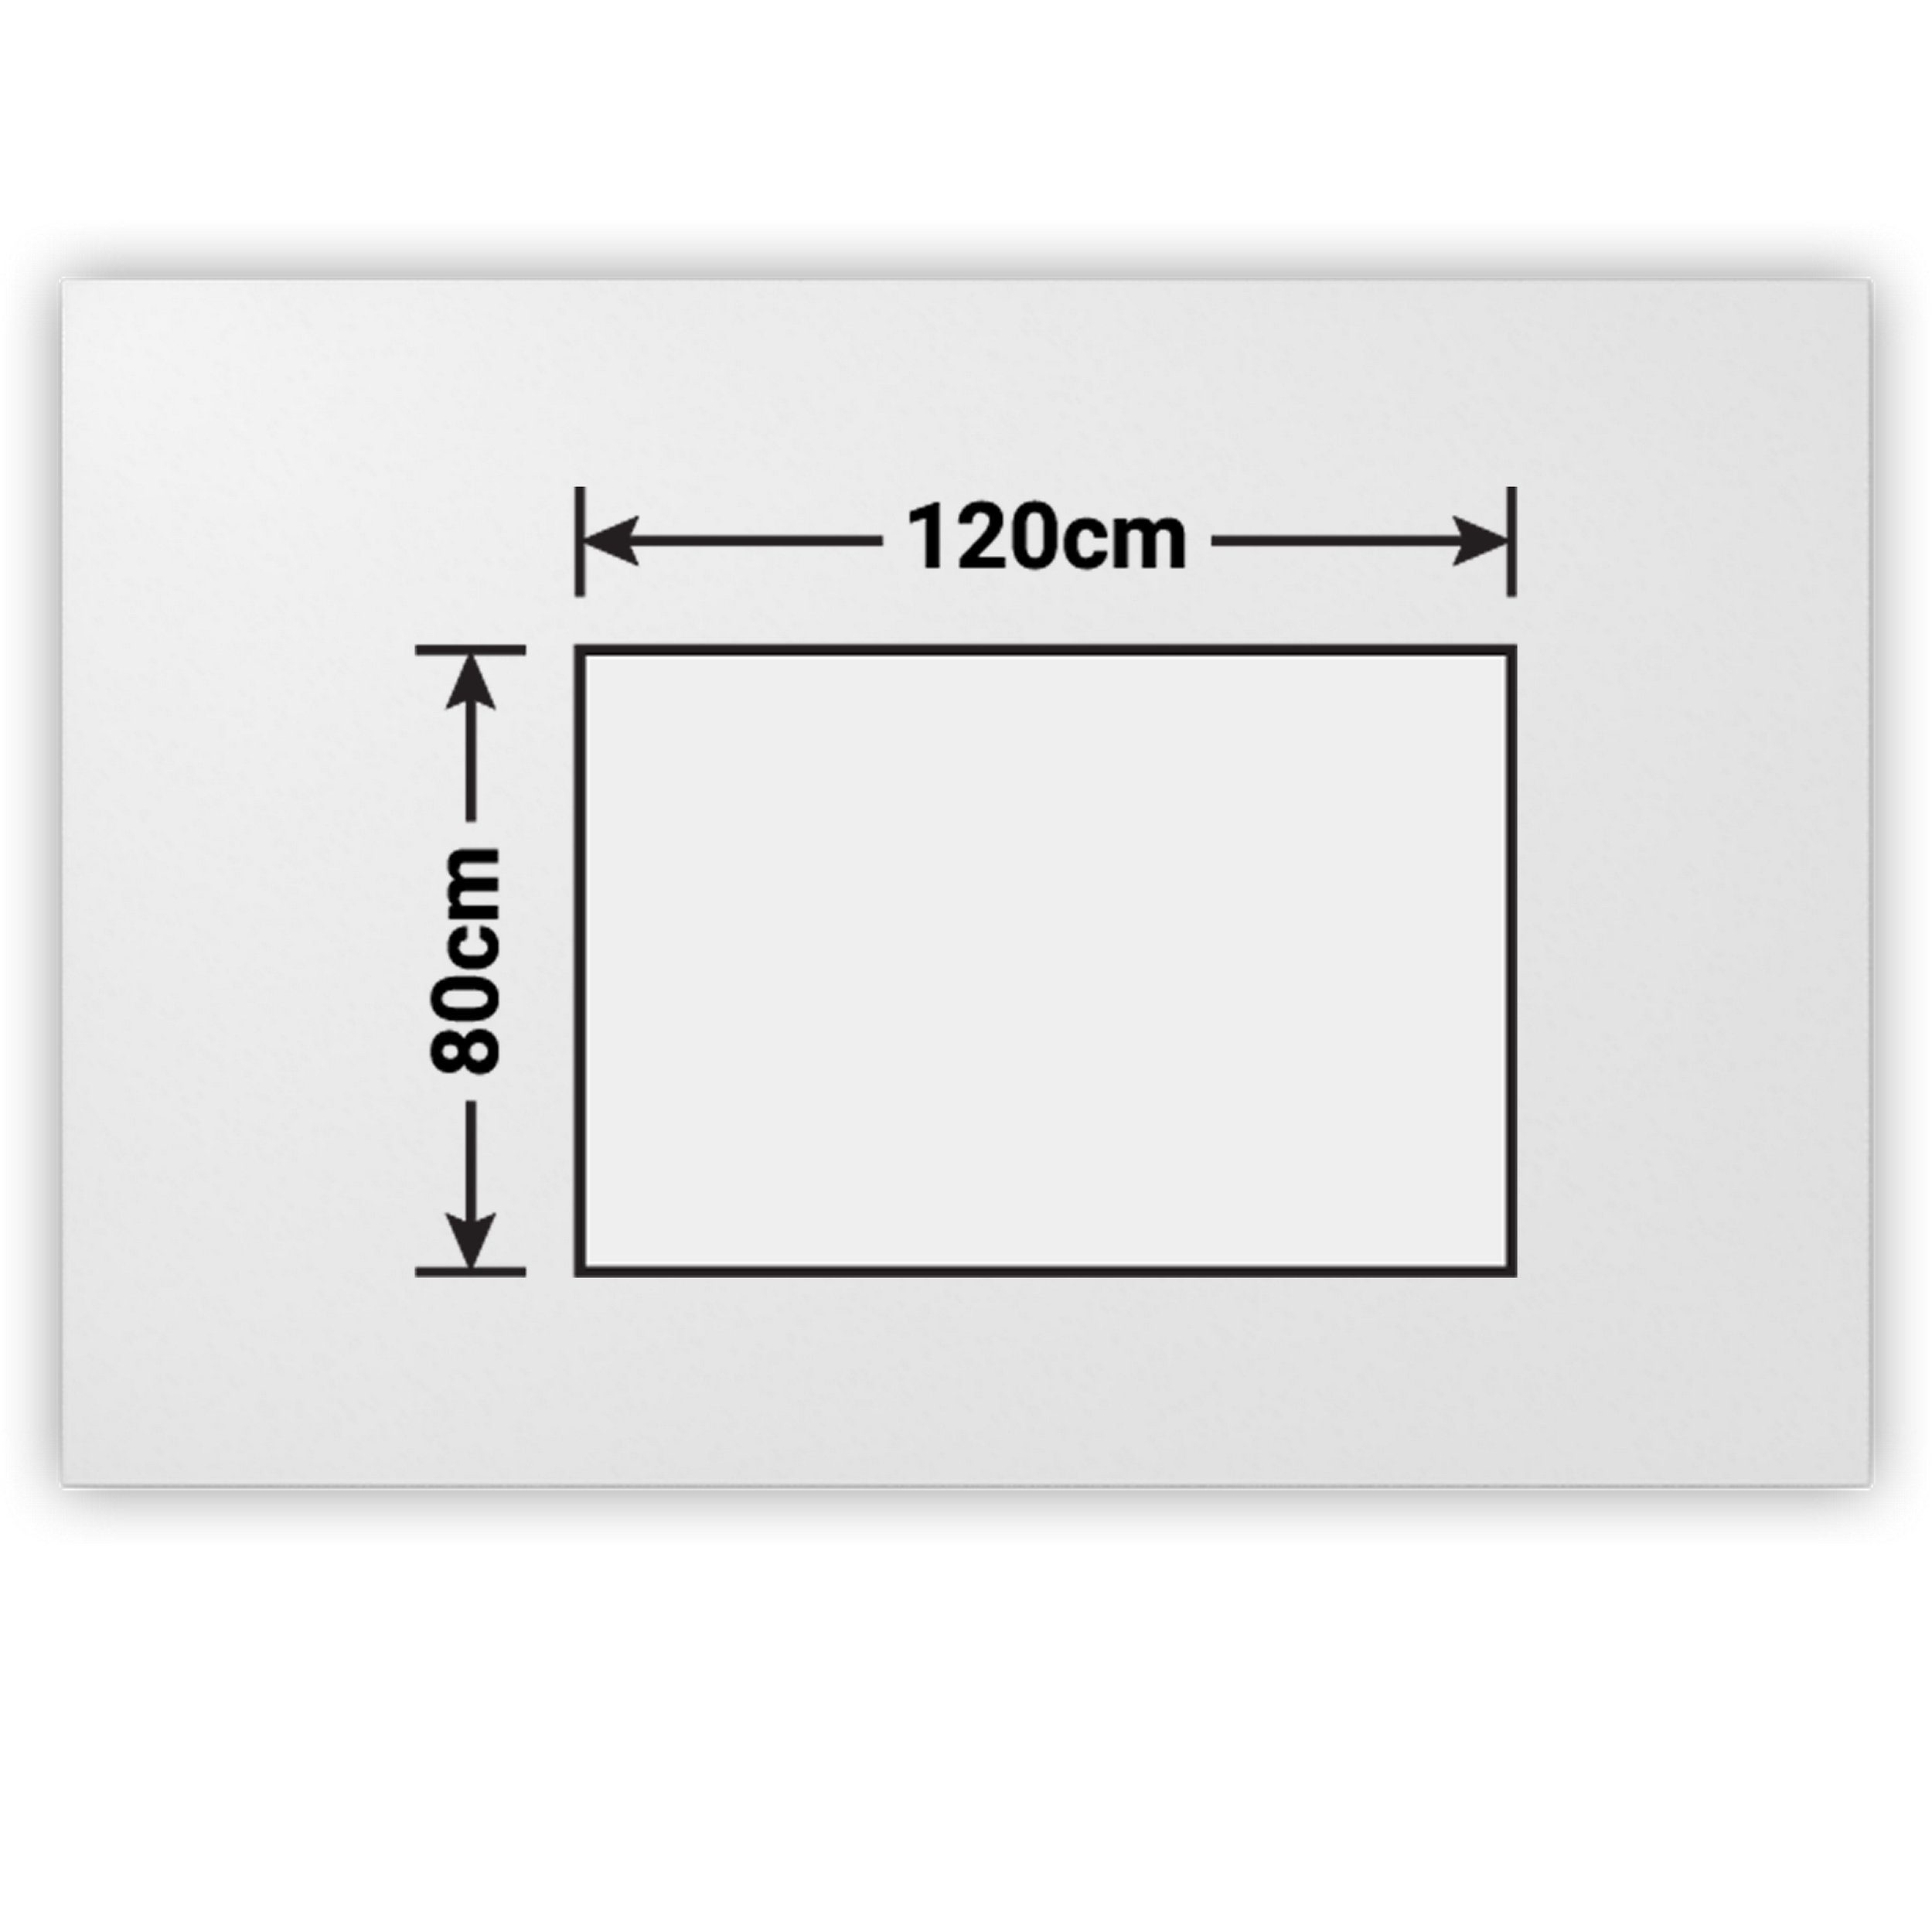 Quadrat: cm 80 Eiche x Dekor: Serie-H, Schreibtisch Schreibtisch bümö - 80